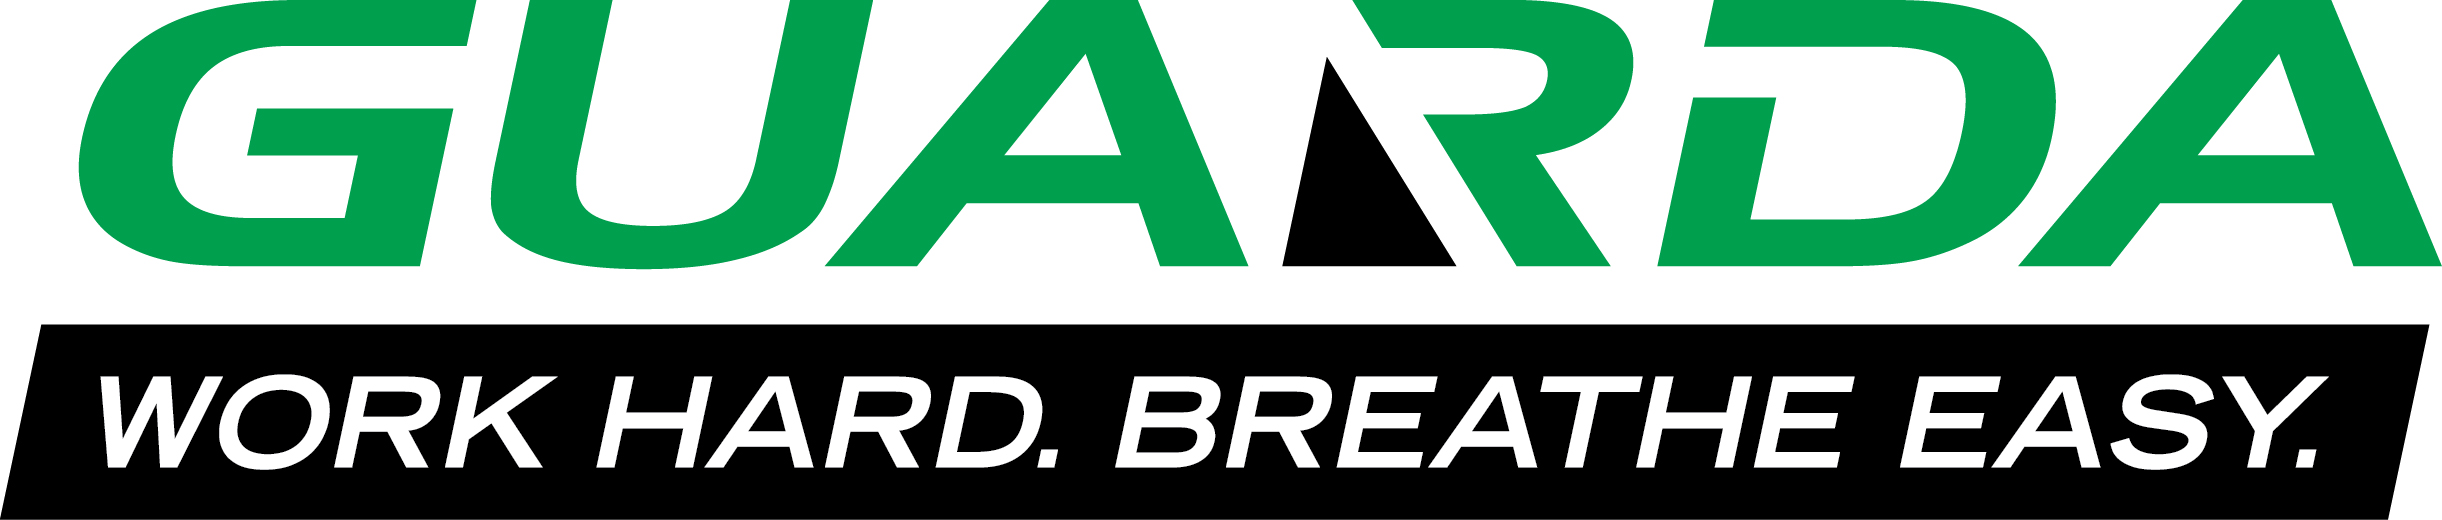 Guarda logo with tagline